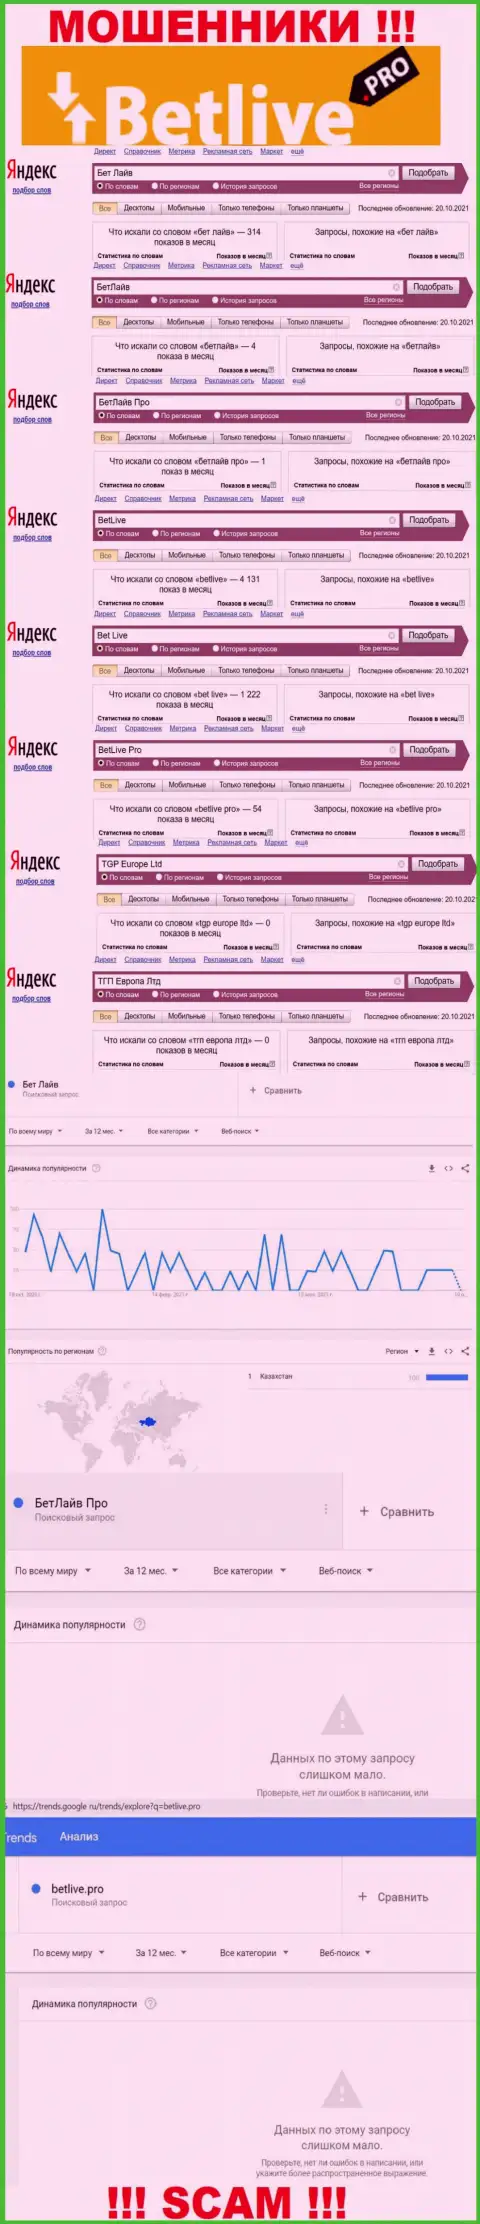 Статистические данные о запросах в поисковиках сети internet сведений о компании BetLive